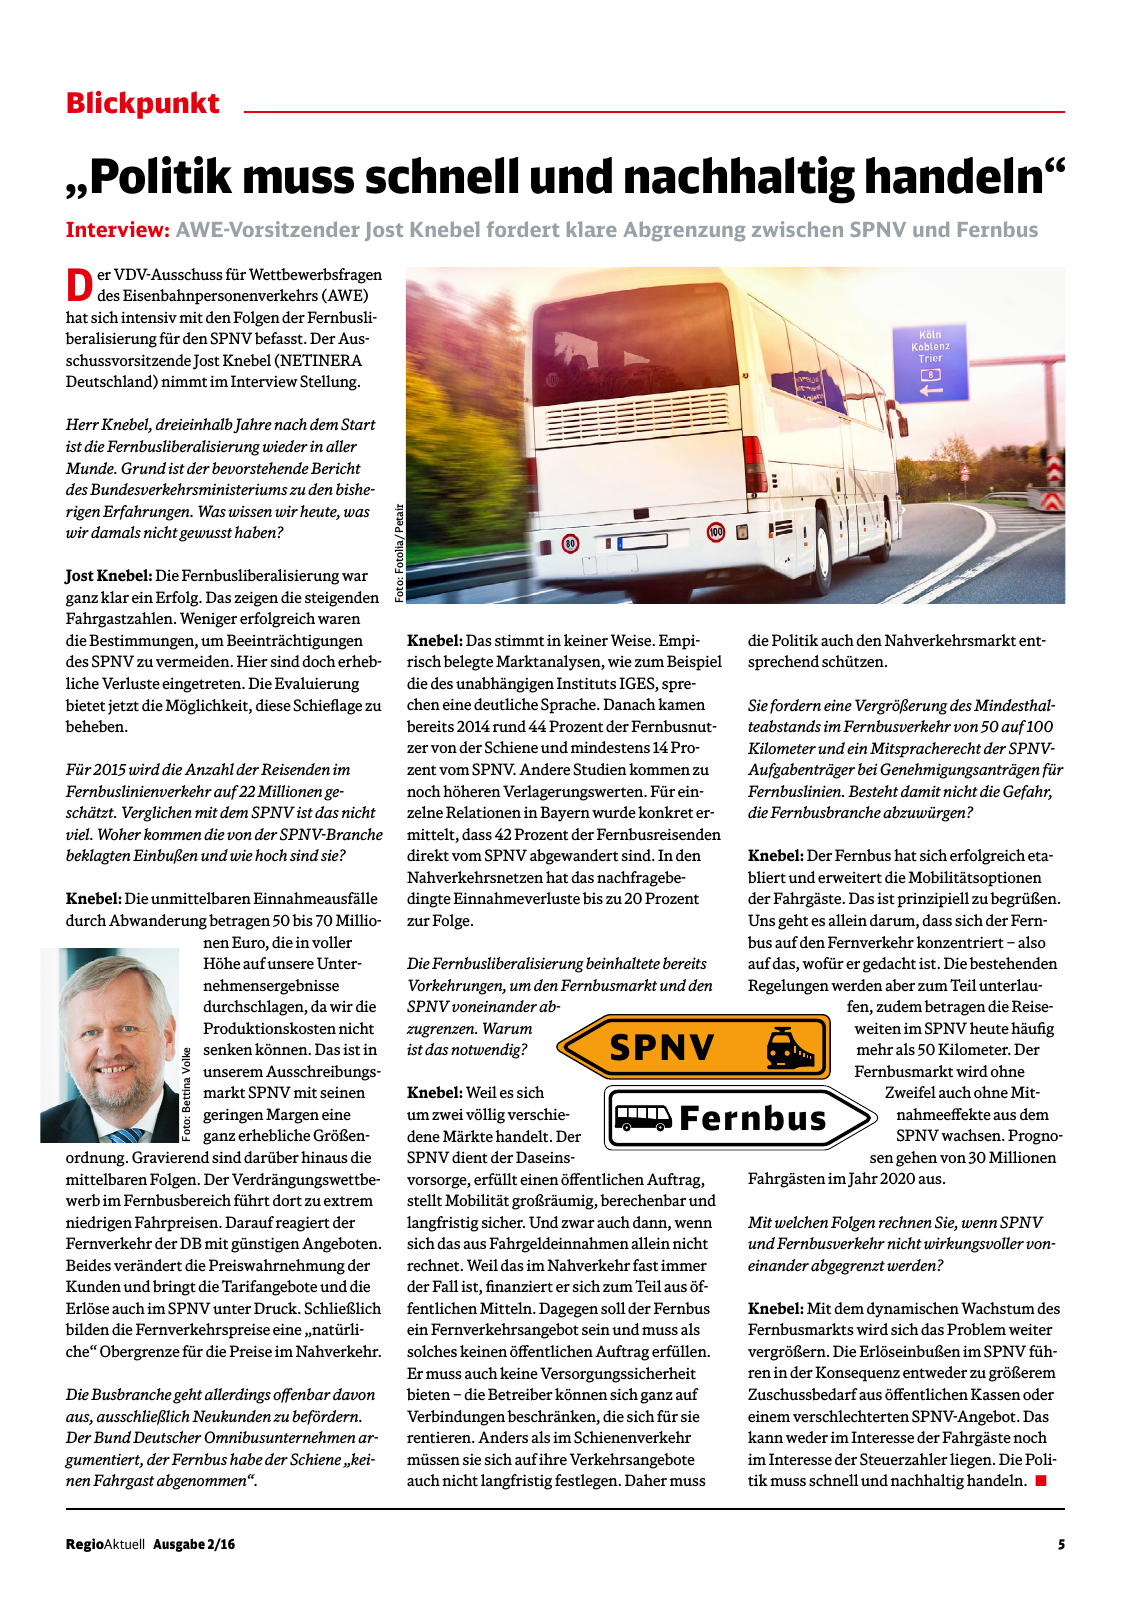 Vorschau RegioAktuell 2/2016 #01 Seite 5